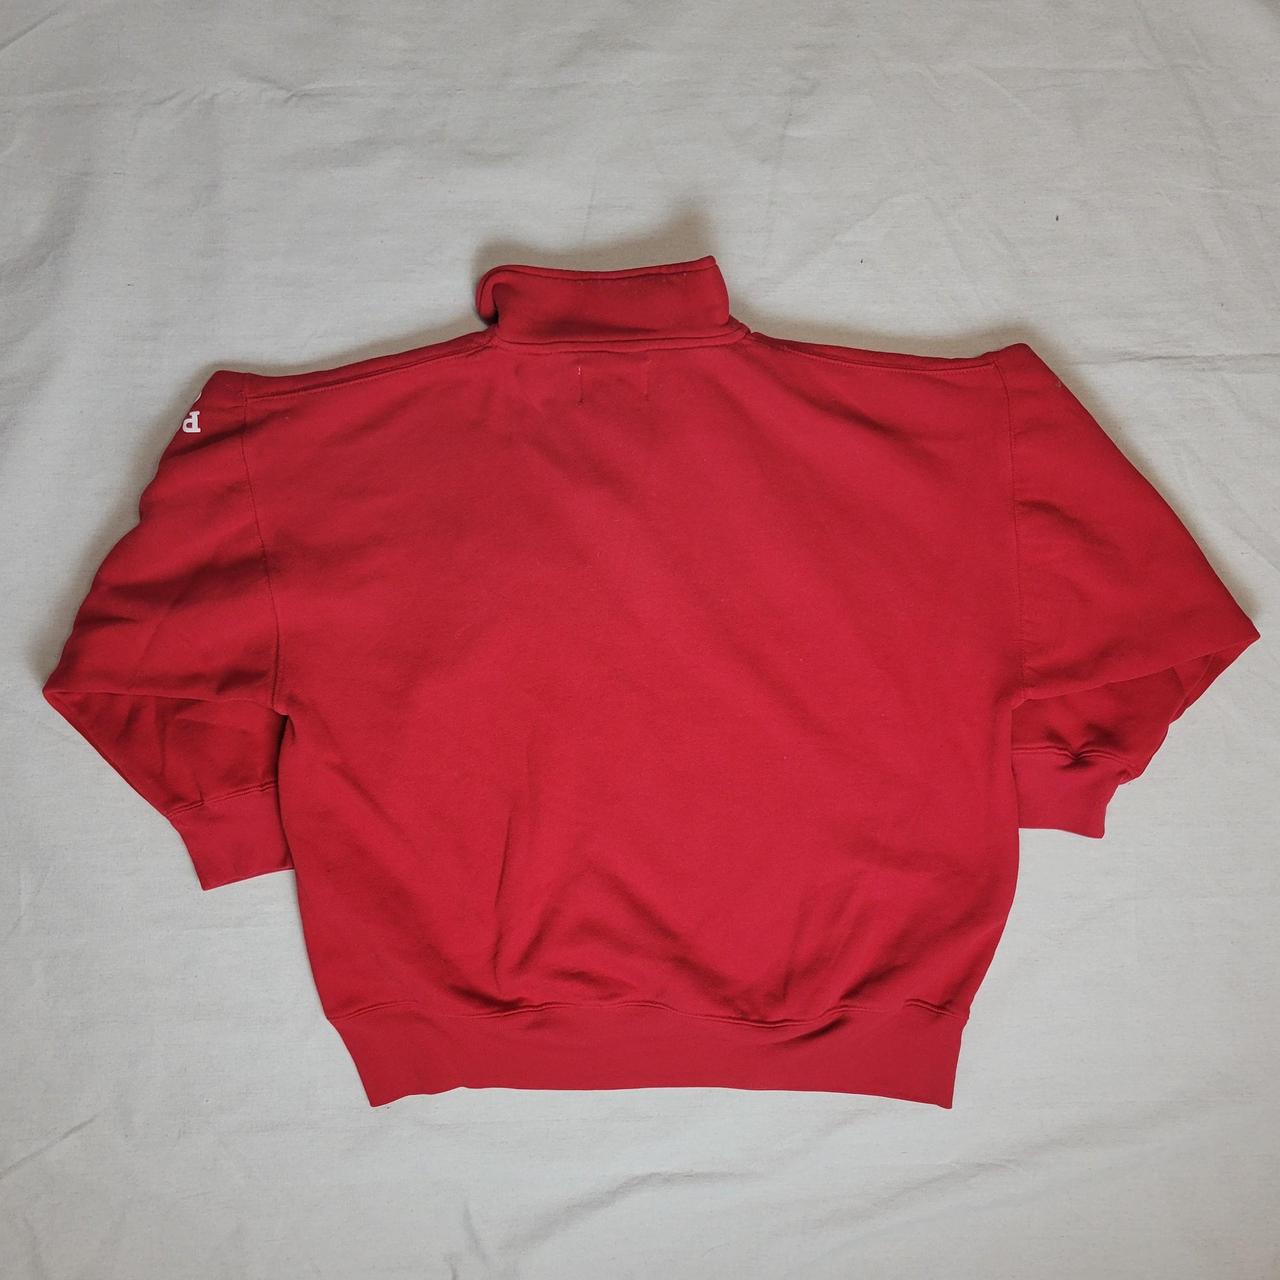 Vintage 90s red quarter zip sweatshirt with amazing... - Depop